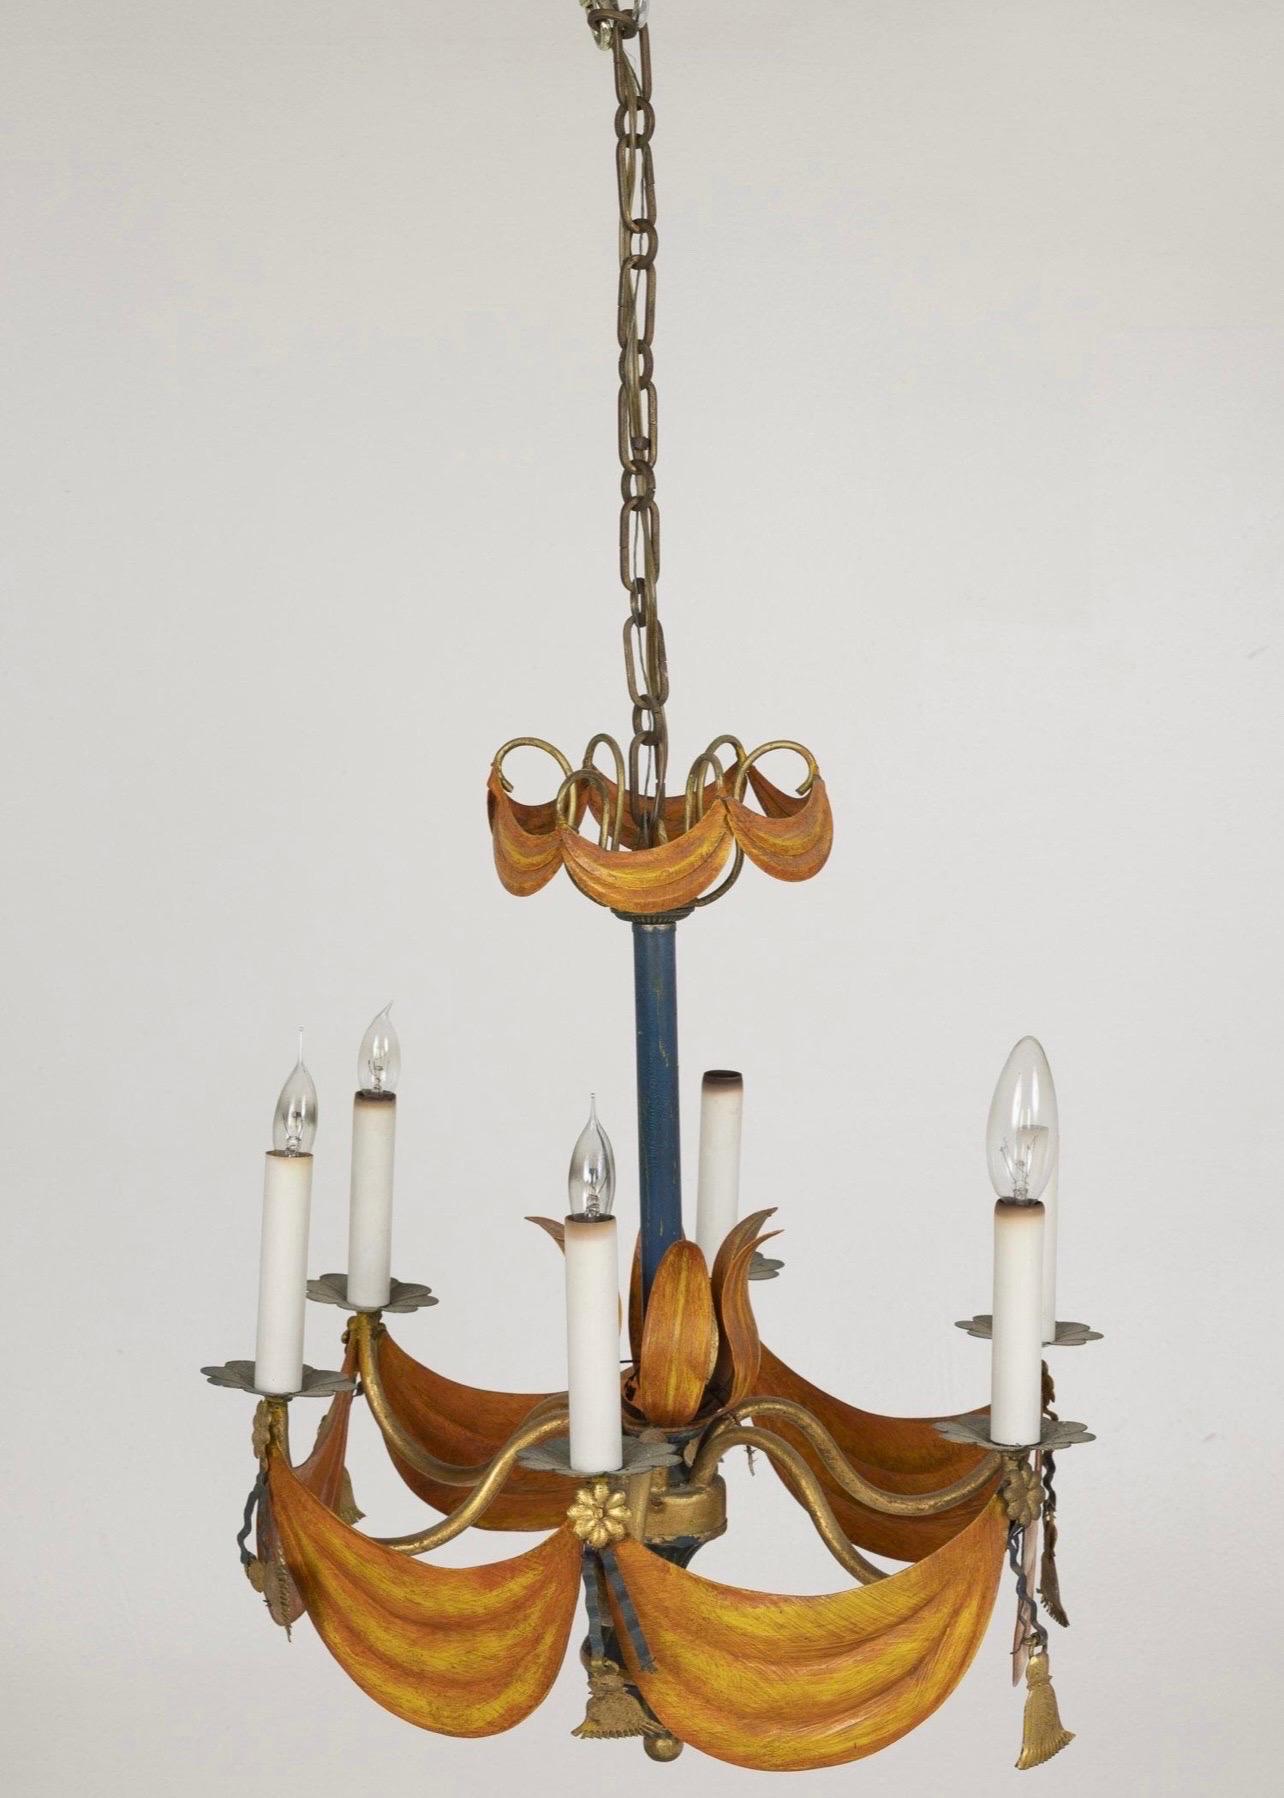 Lustre décoratif Tole à 6 lumières, décoré d'une draperie orange doré en guirlandes et glands sous les chandeliers se terminant par un fleuron en forme de boule.  C. 1940's
Dimensions : Hauteur : 19 1/2 po. x Largeur : 18 1/2 po.